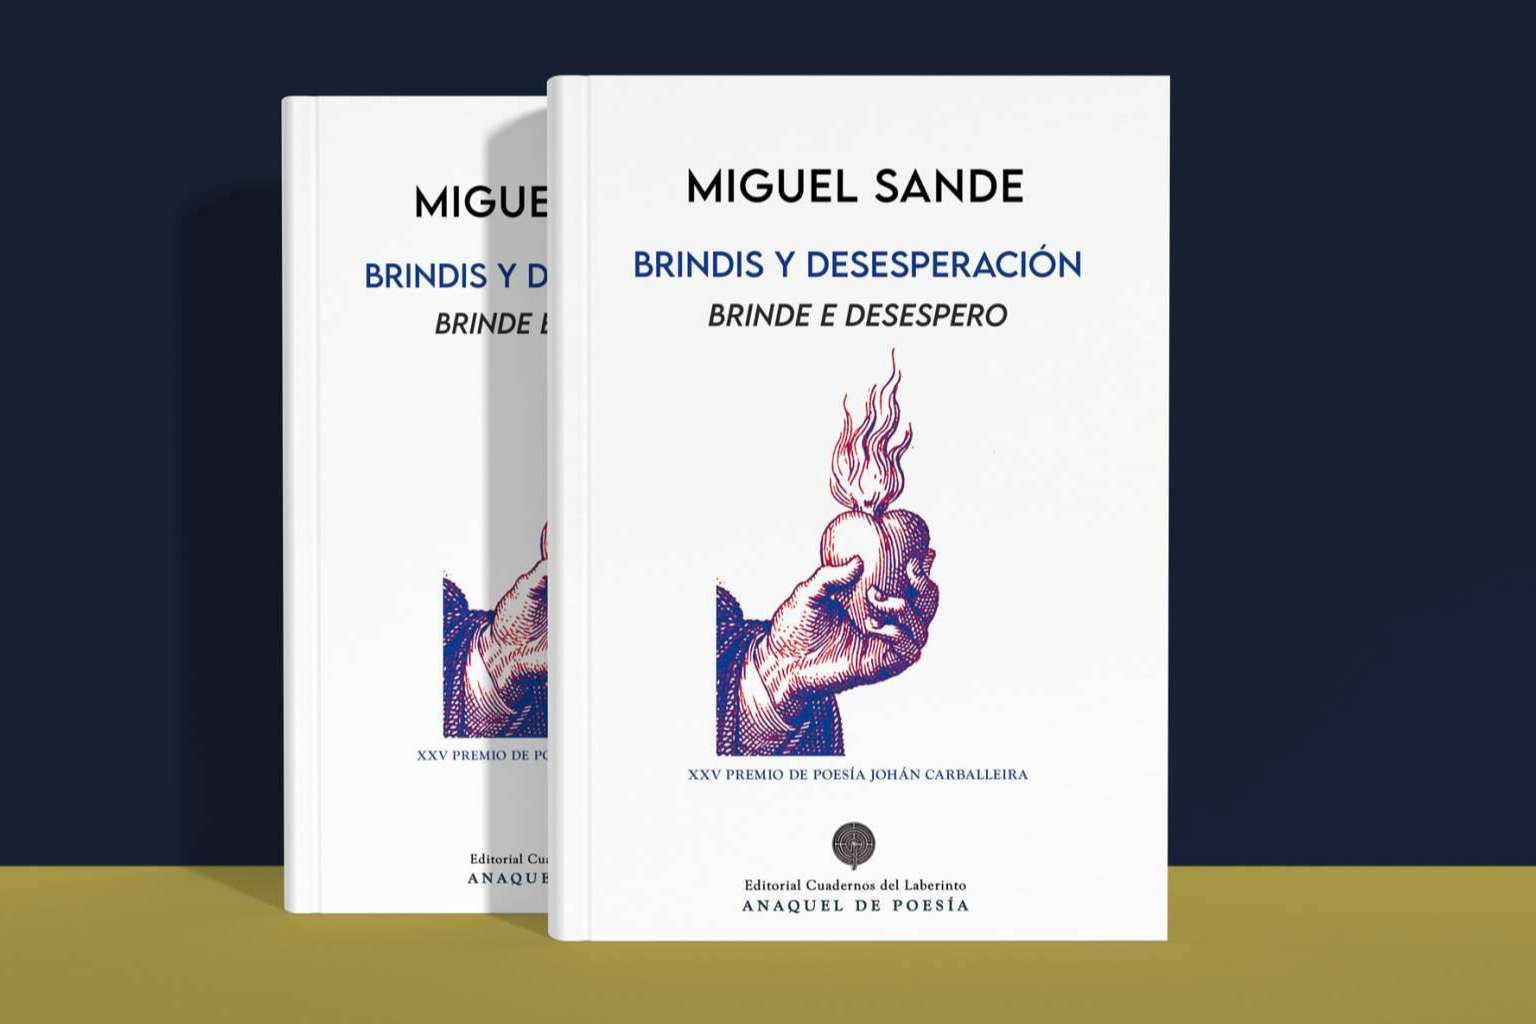  El poeta y periodista Miguel Sande publica en edición bilingüe (castellano/gallego) su obra 'Brindis y desesperación' 